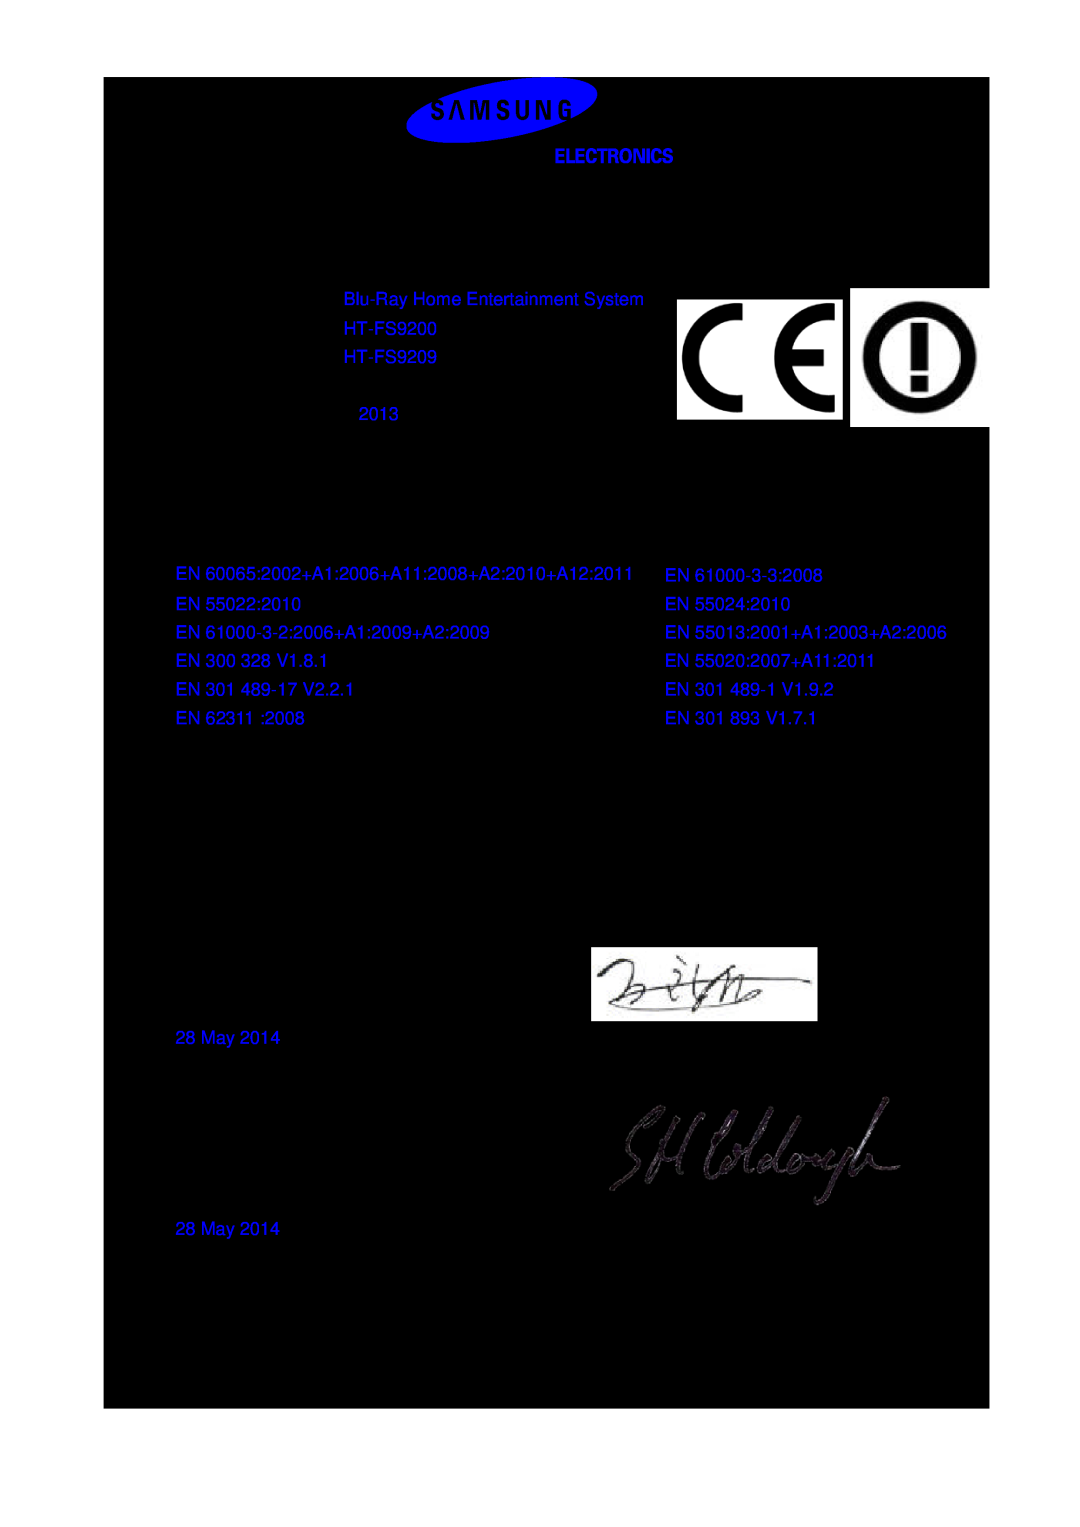 Samsung HT-FS9200/XN, HT-FS9209/ZG, HT-FS9200/ZF, HT-FS9200/EN, HT-FS9200/XE manual Declaration of Conformity 